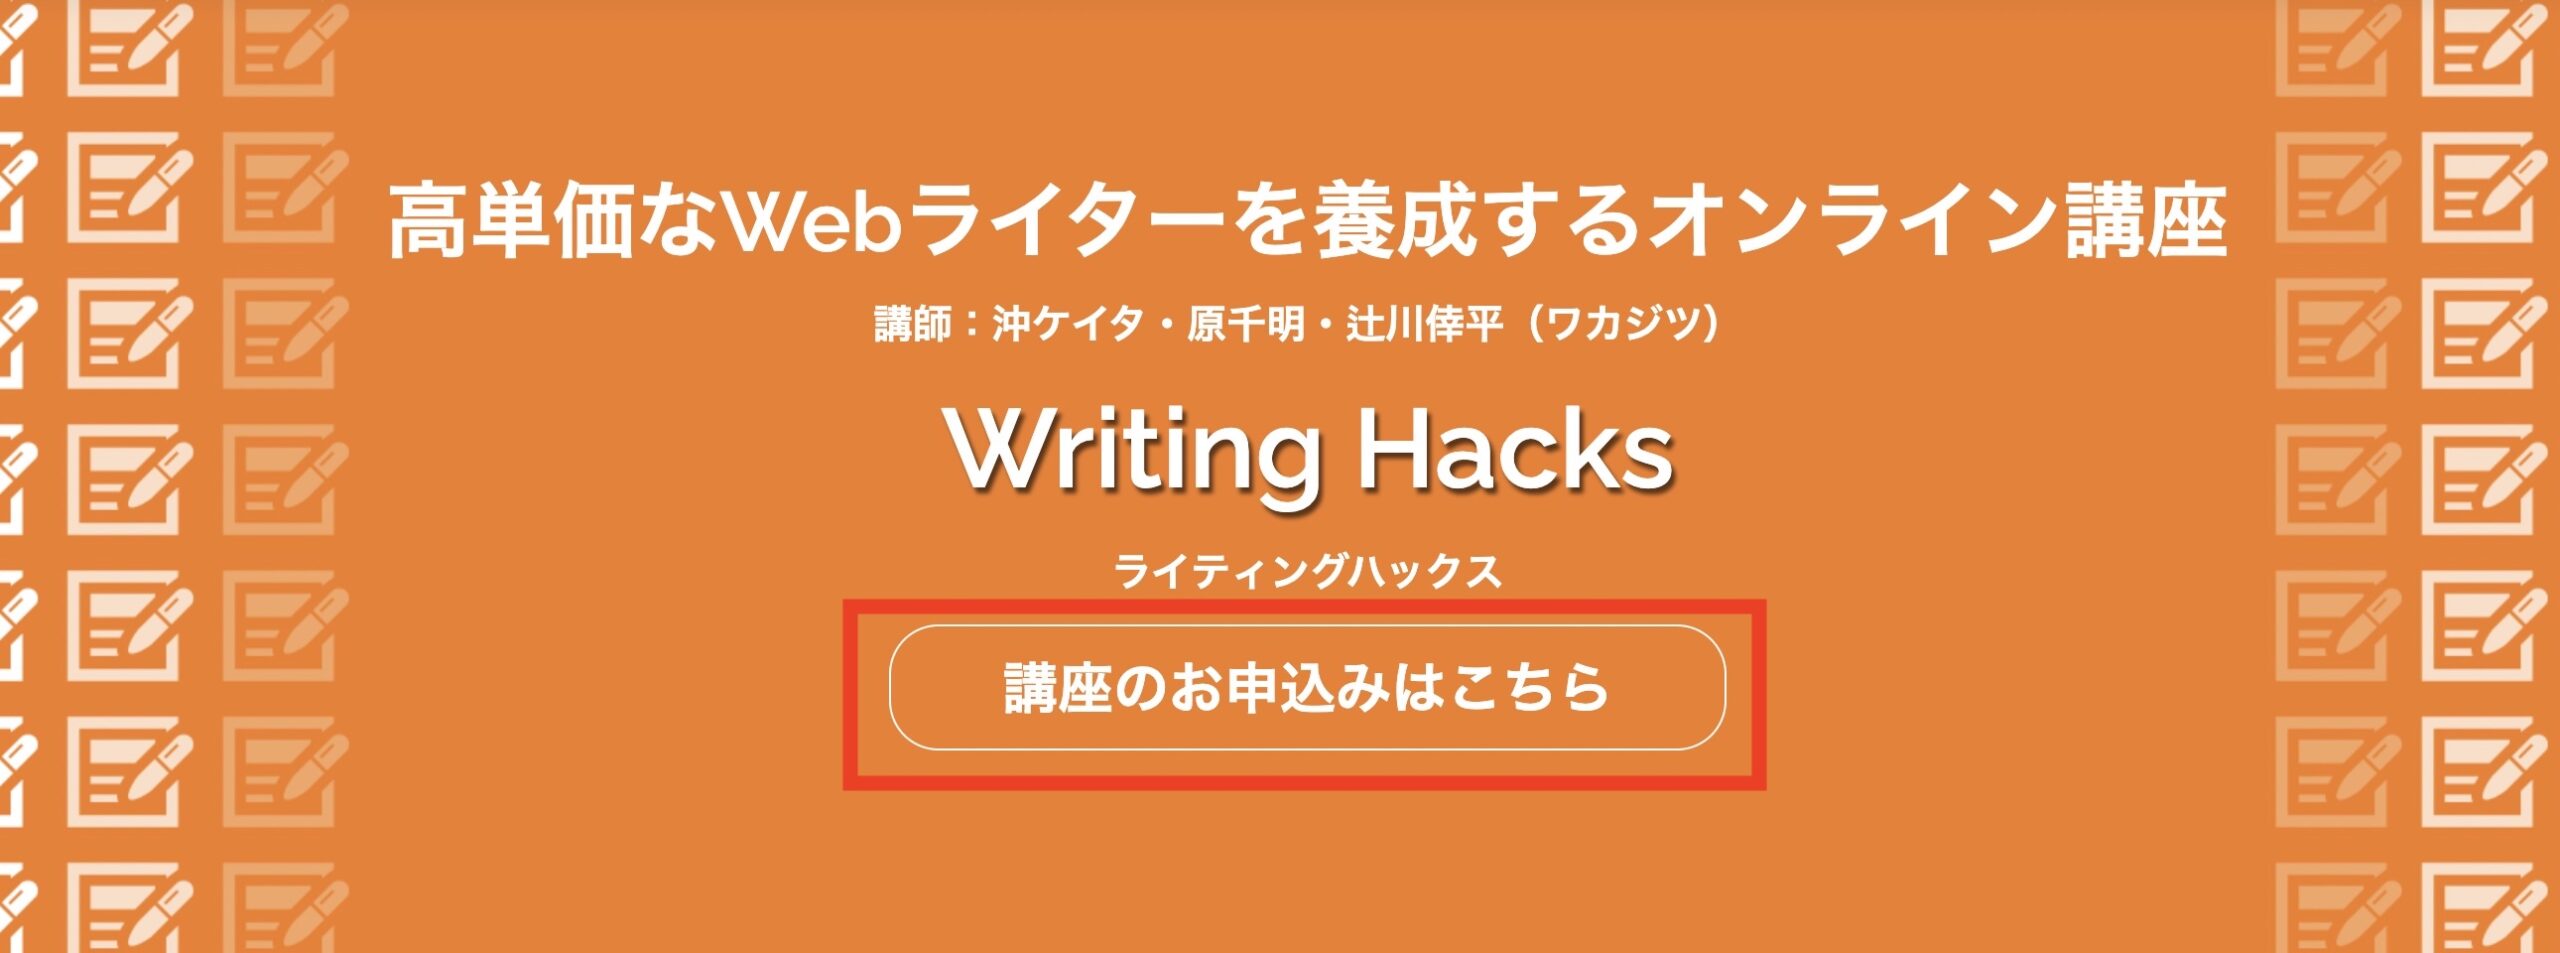 Writing Hacks